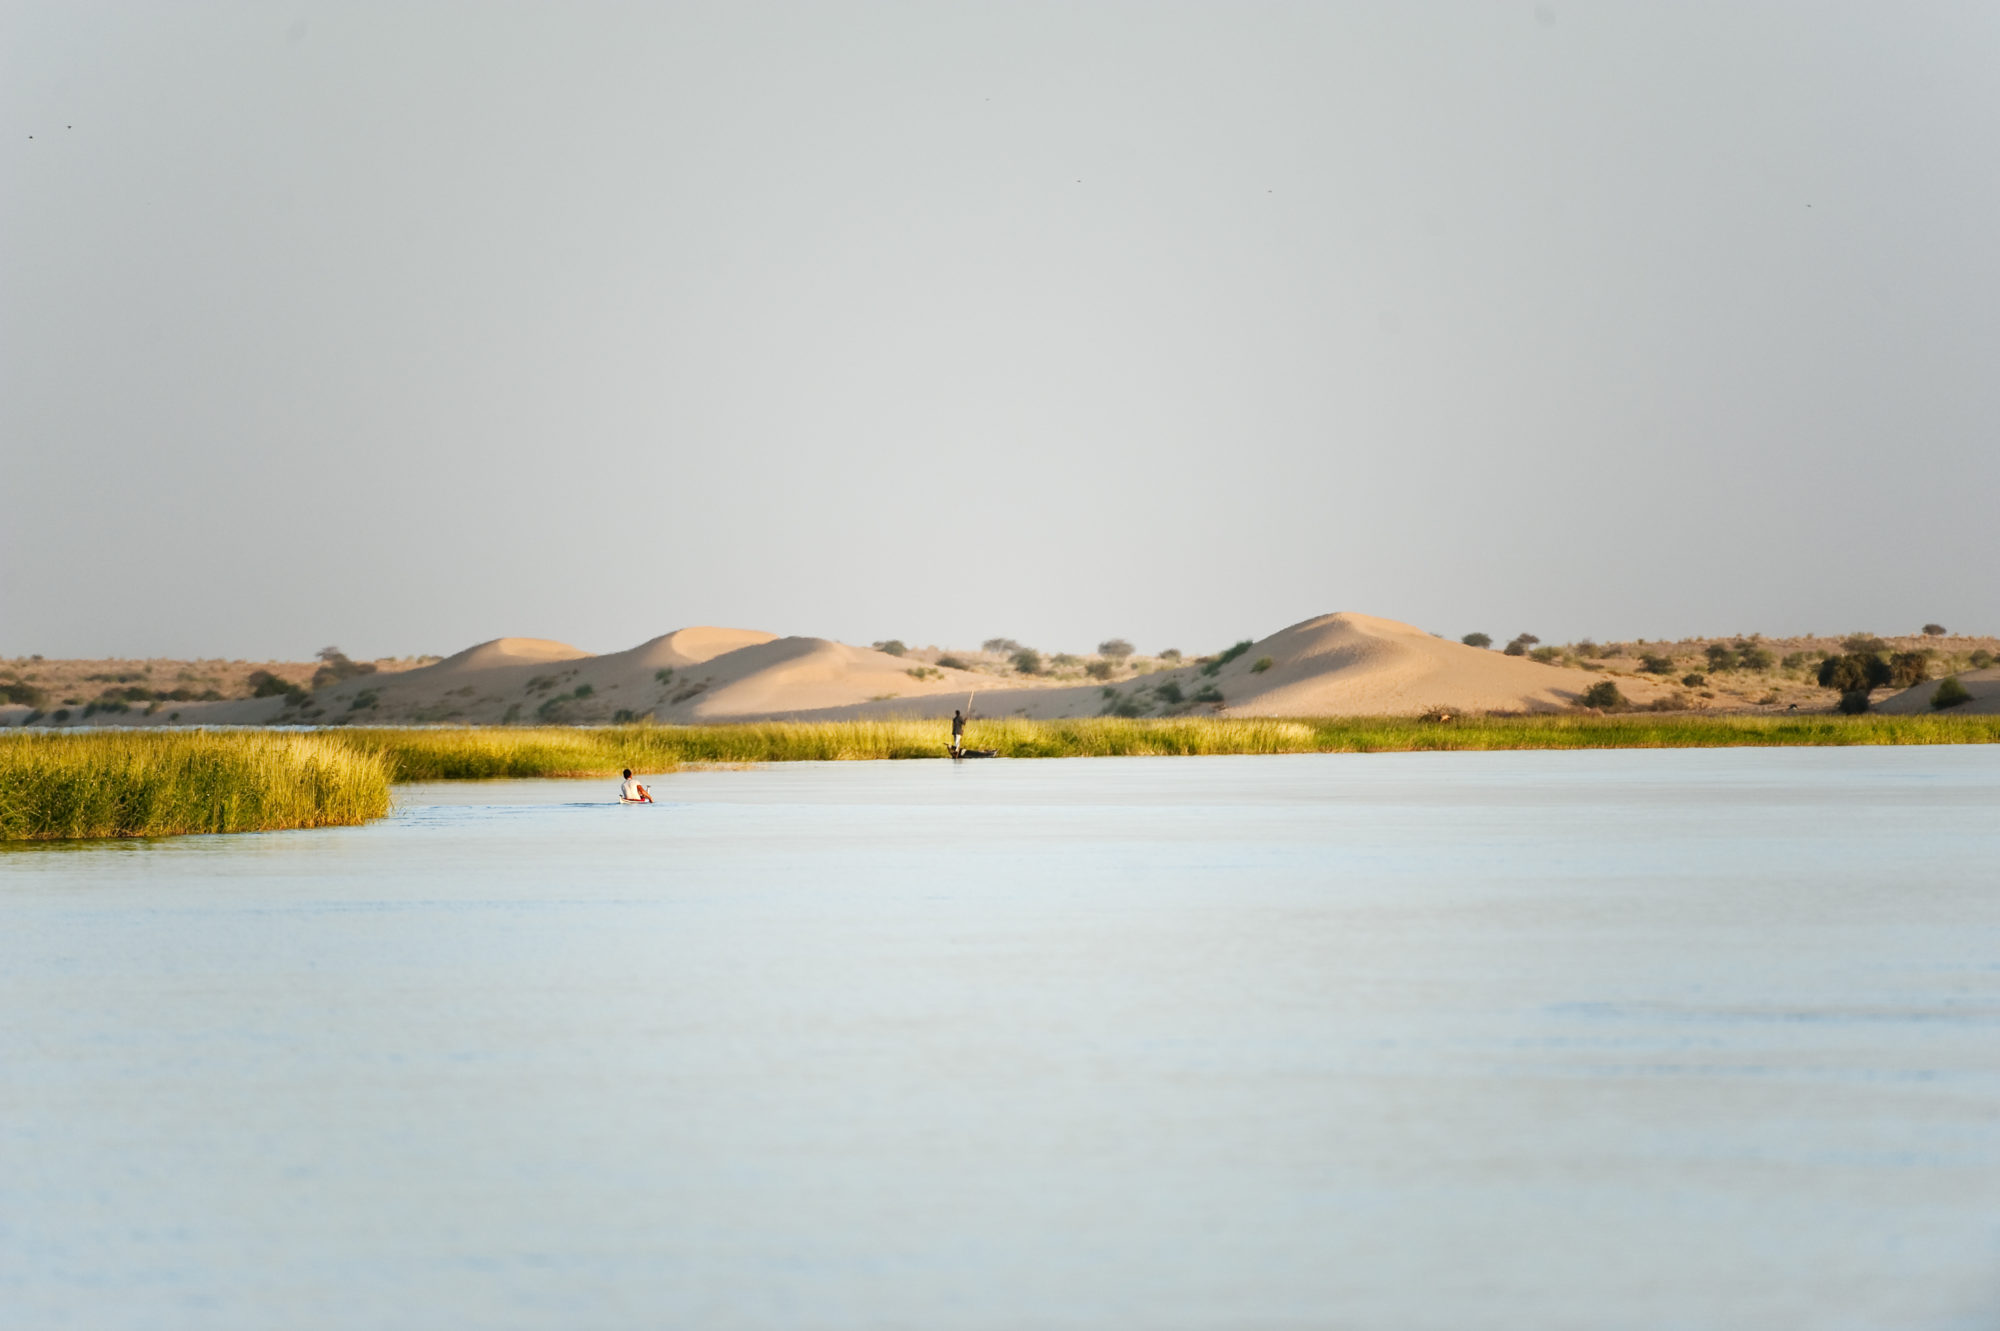 Foto di Aldo Mazzocchi in canoa sul fiume Niger